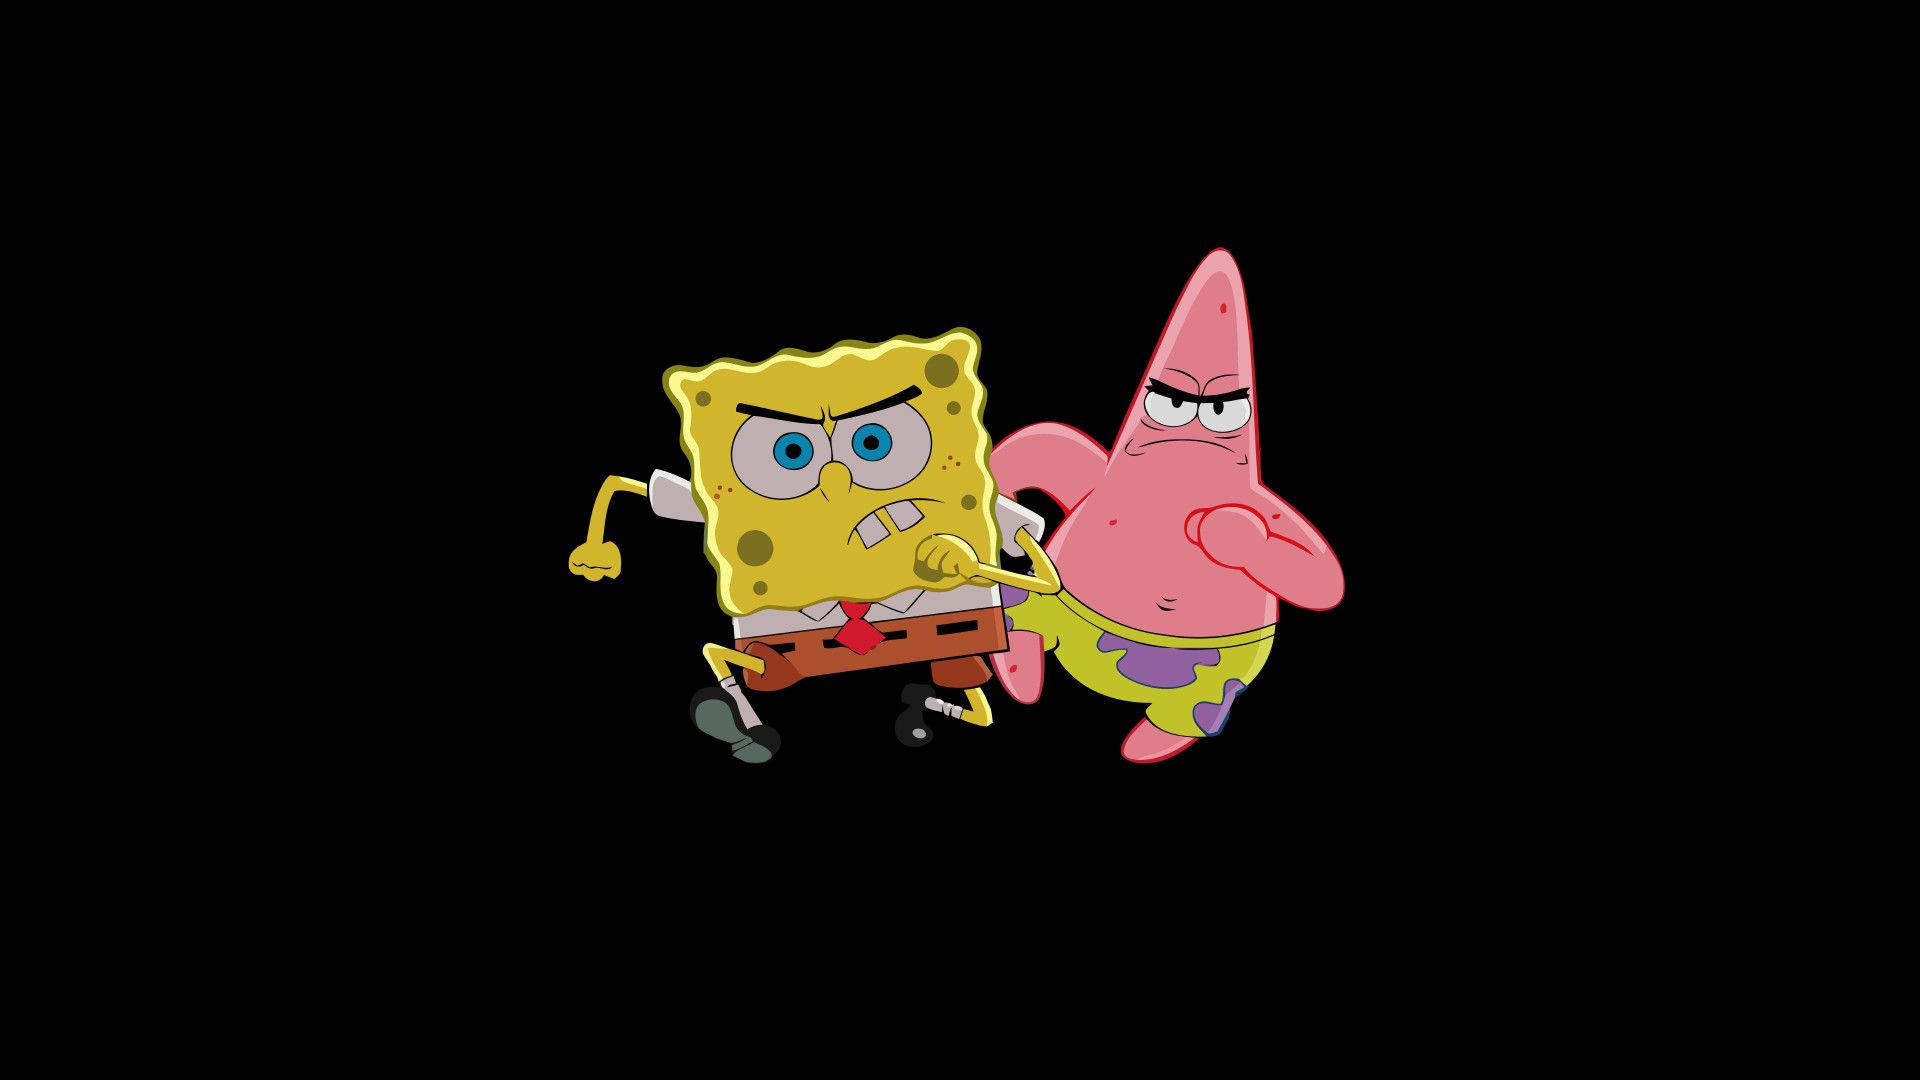 spongebob and patrick dancing